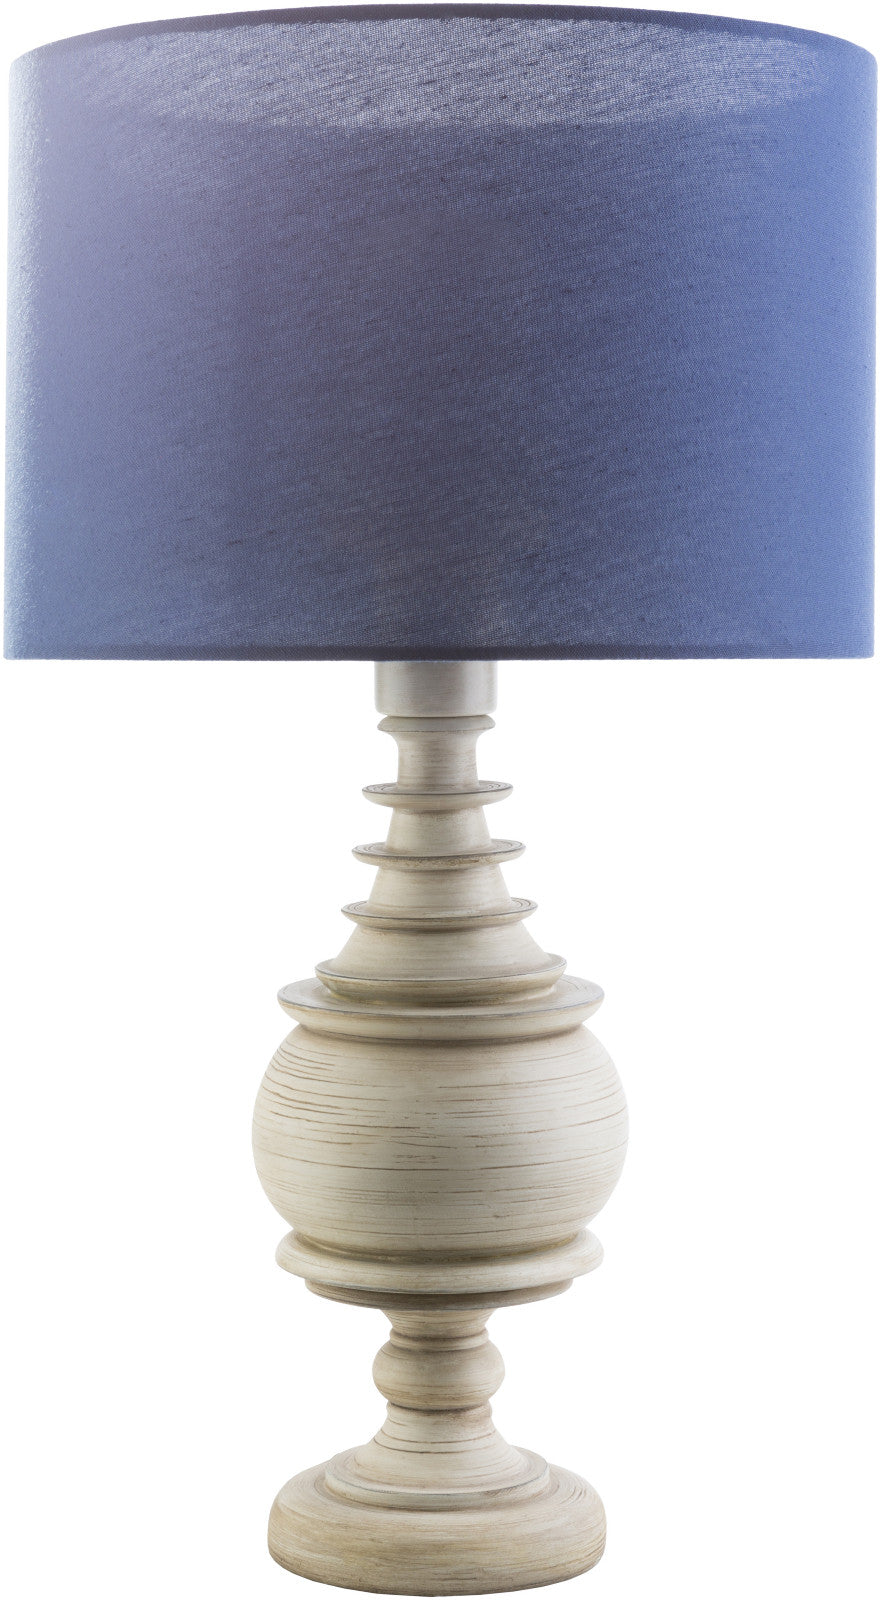 Surya Acacia ACC-560 Navy Lamp Table Lamp